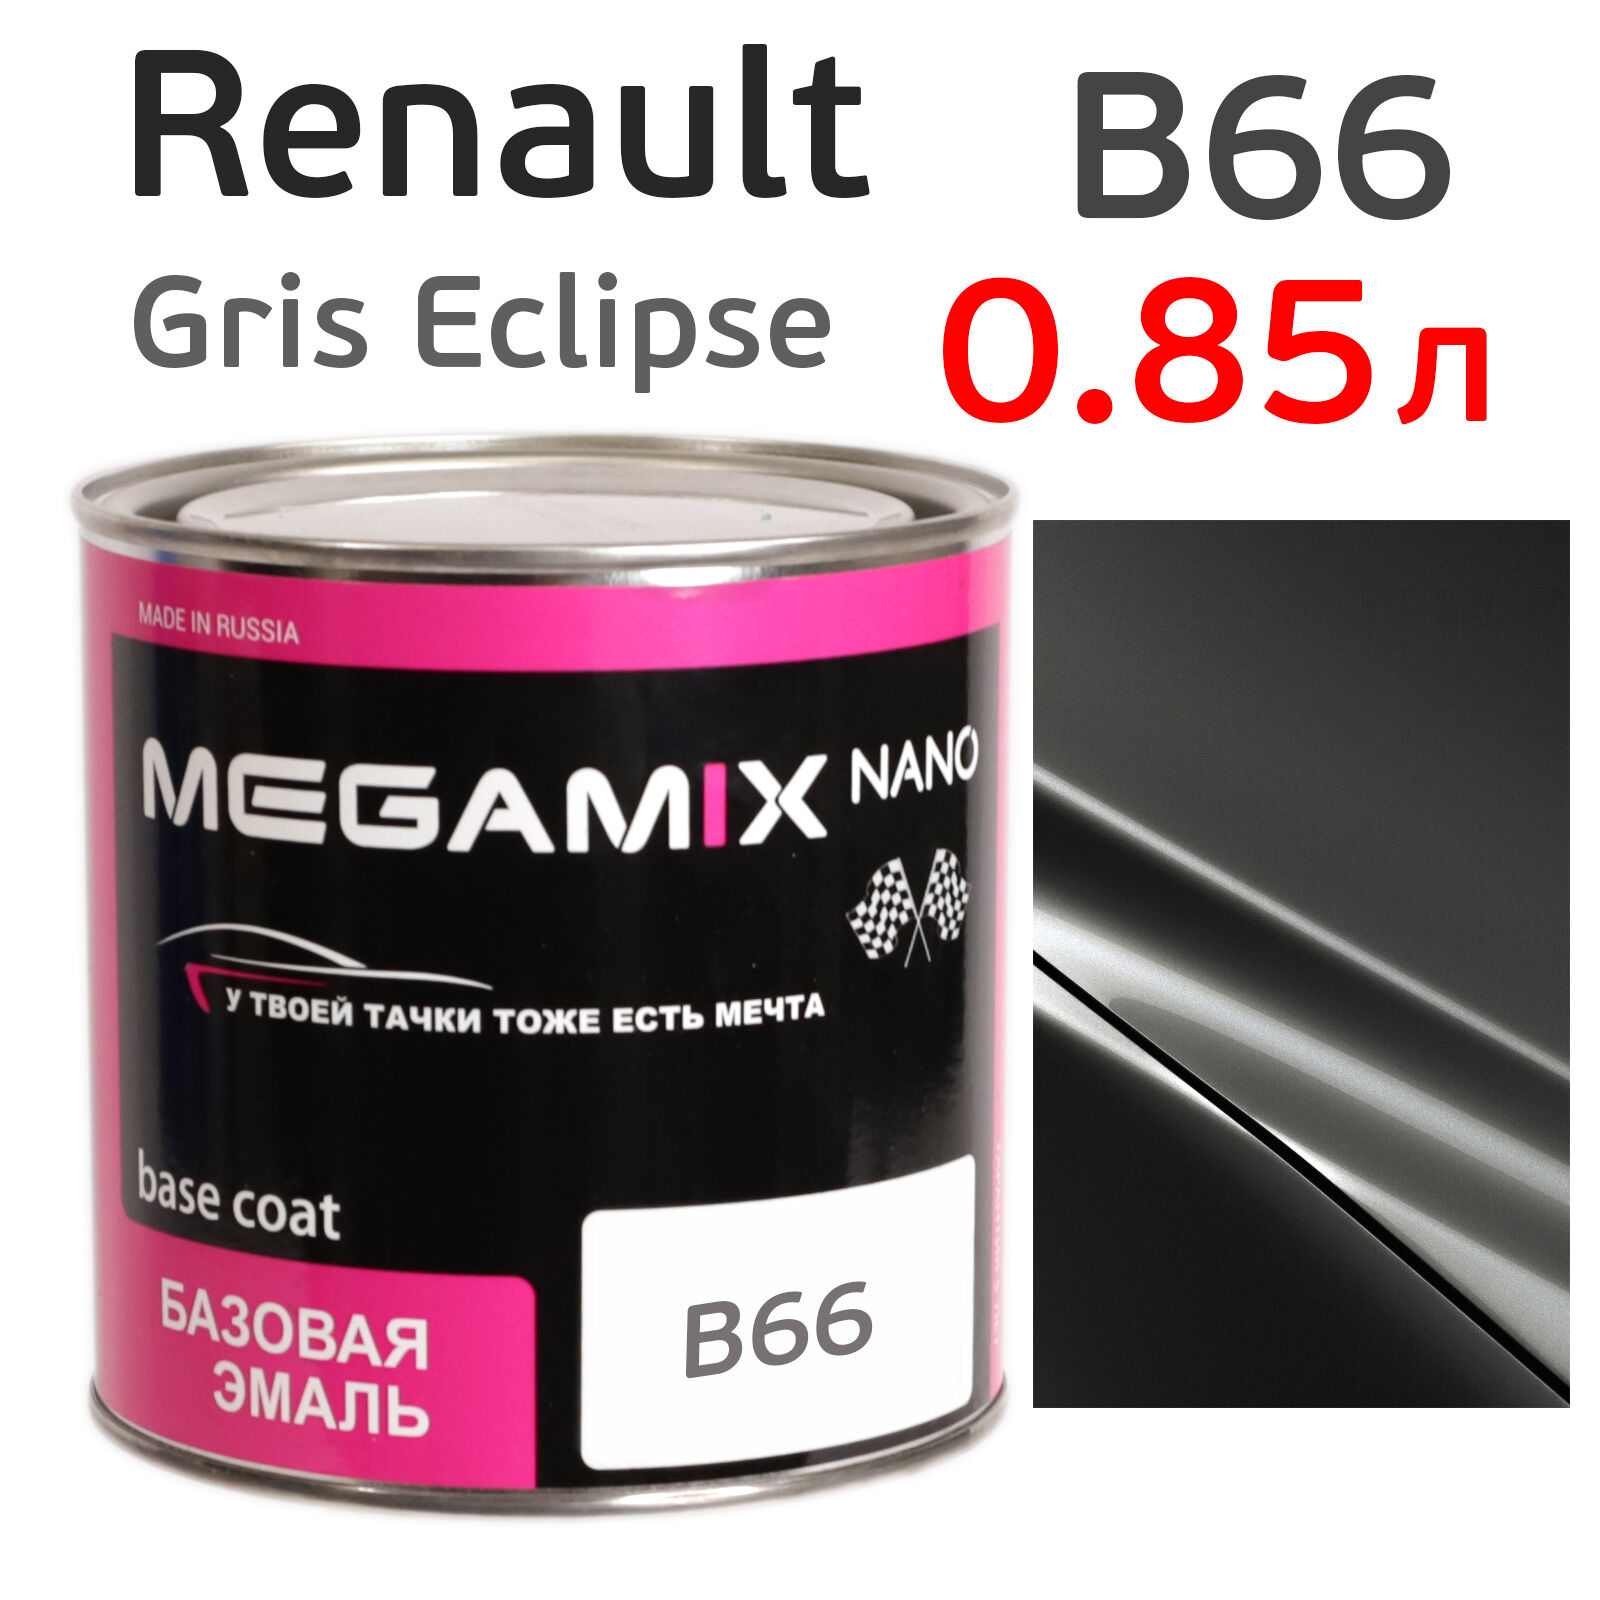 Автоэмаль MegaMIX (0.85л) Renault B66 Gris Eclipse, металлик, базисная эмаль под лак